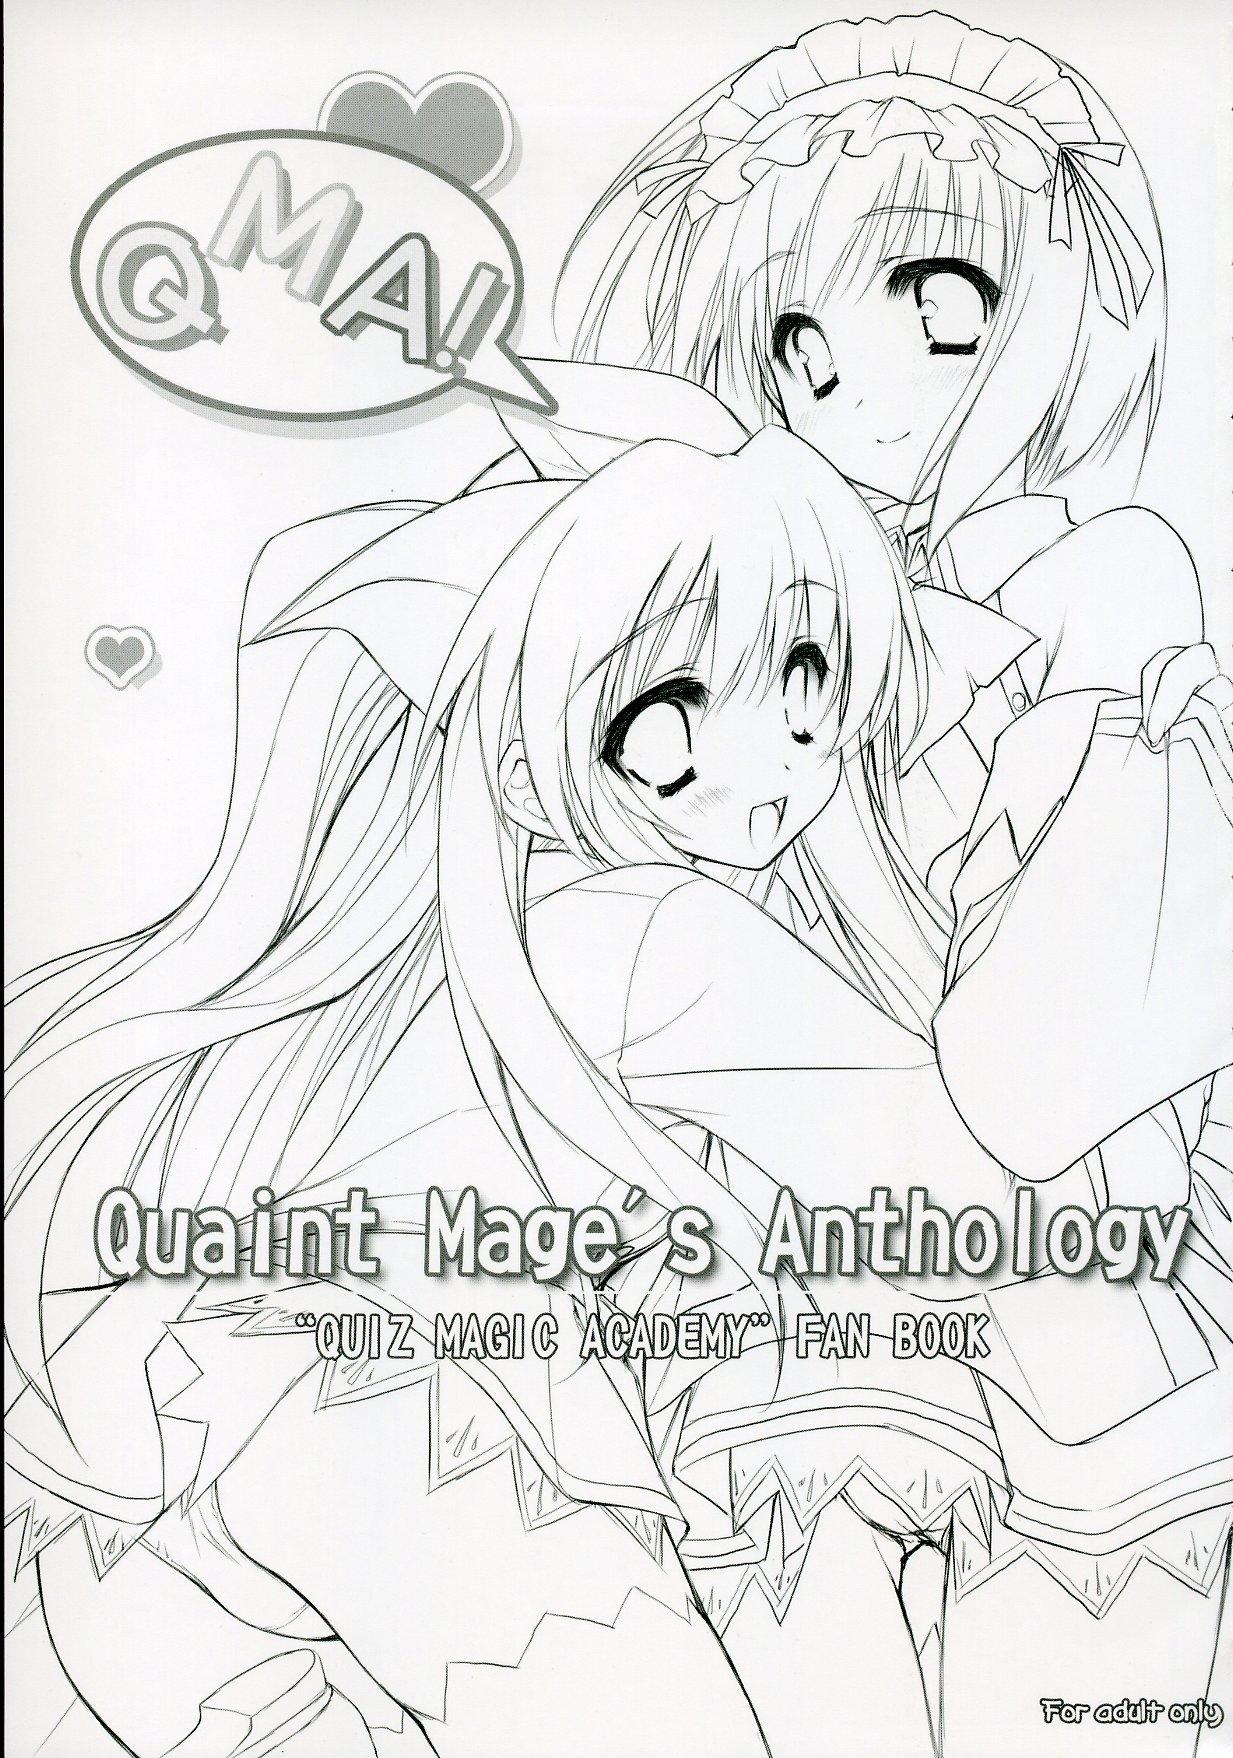 Quaint Mage's Anthology 1